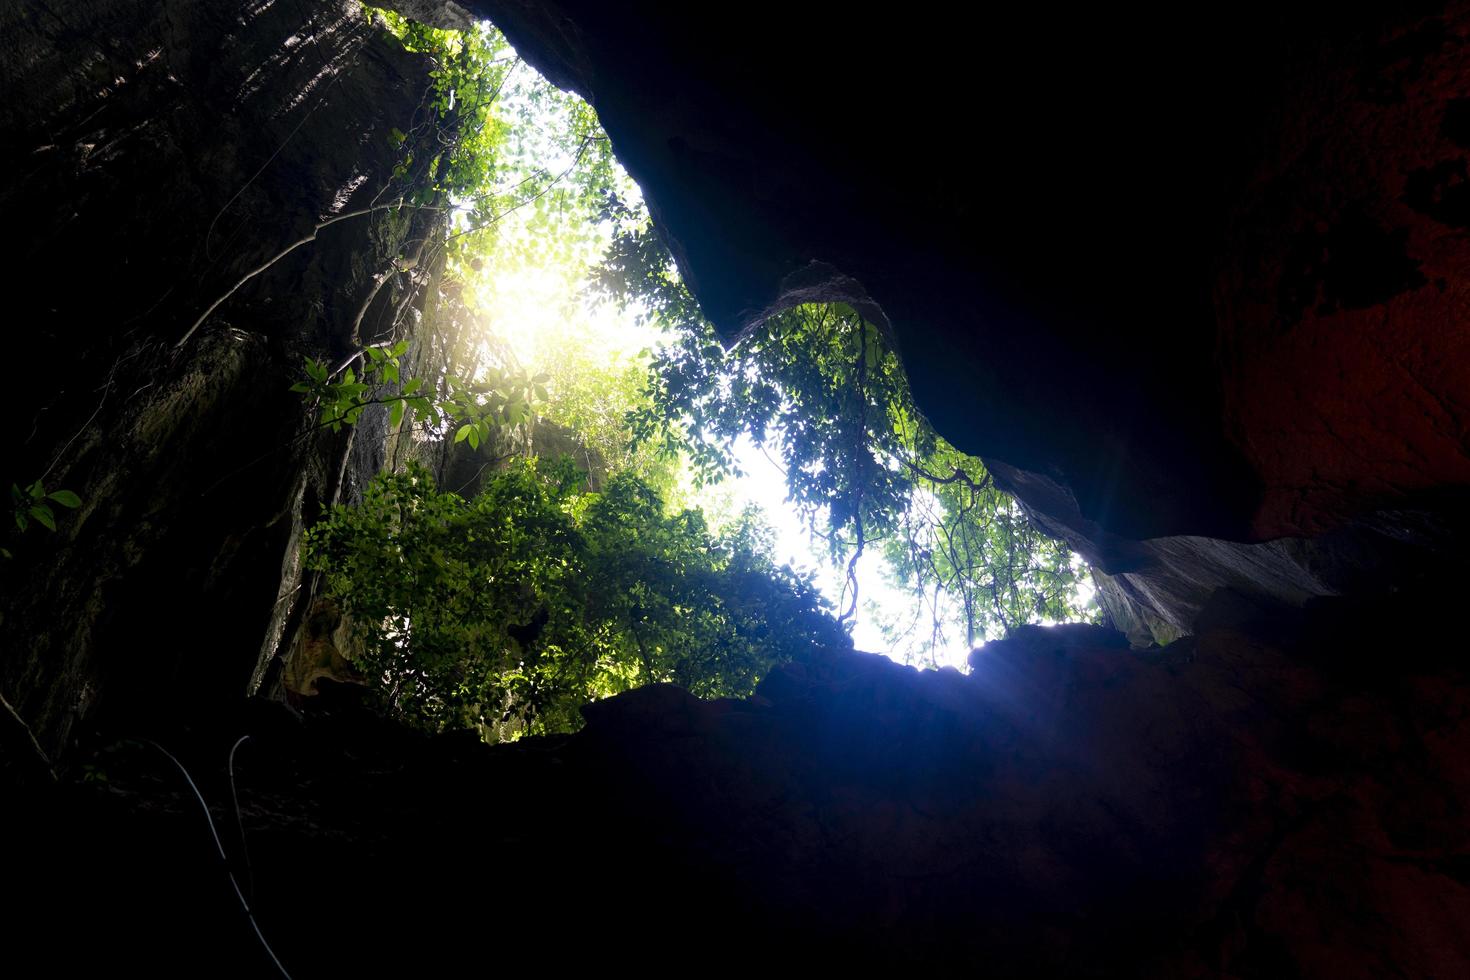 vista interna da entrada da caverna. está coberto de árvores e folhas verdes. e vi a luz do céu brilhar foto